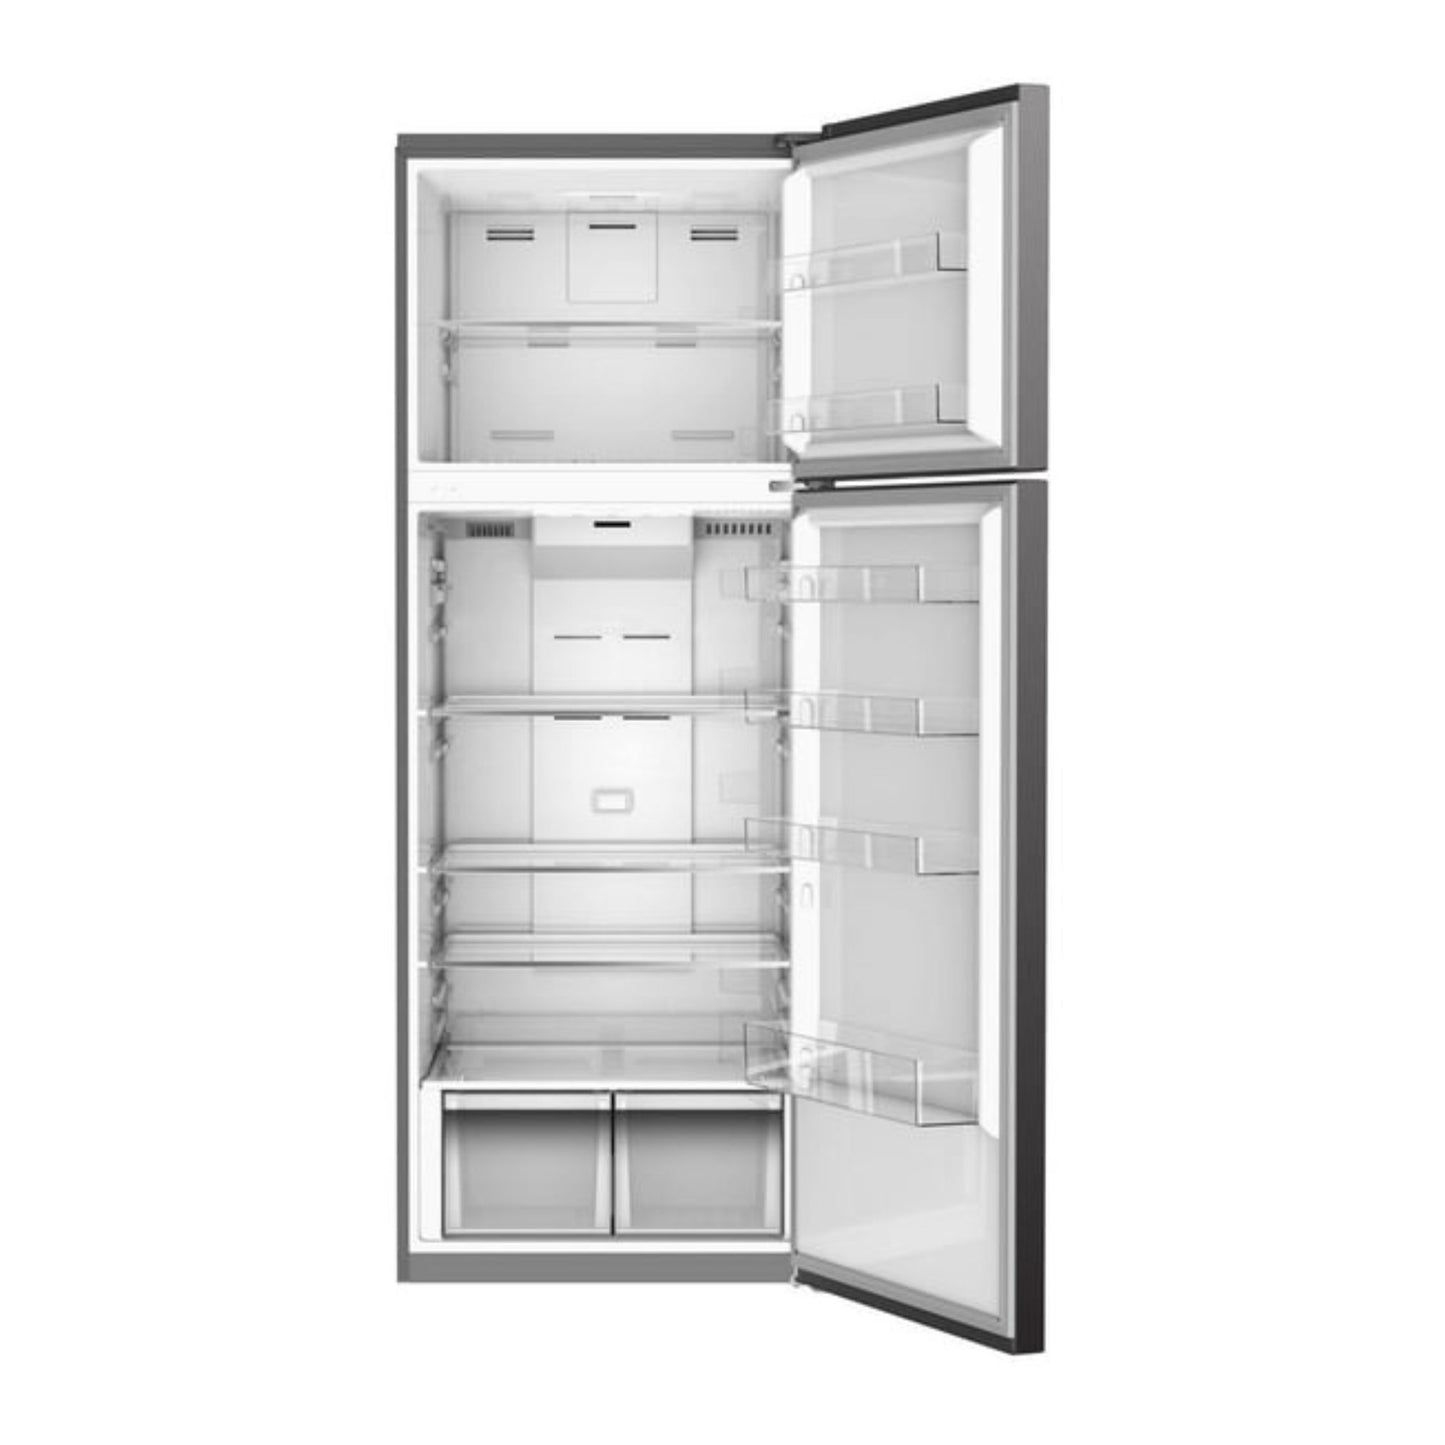 Westpoint 500L Top Mount Refrigerator, WNN 5719.EIV